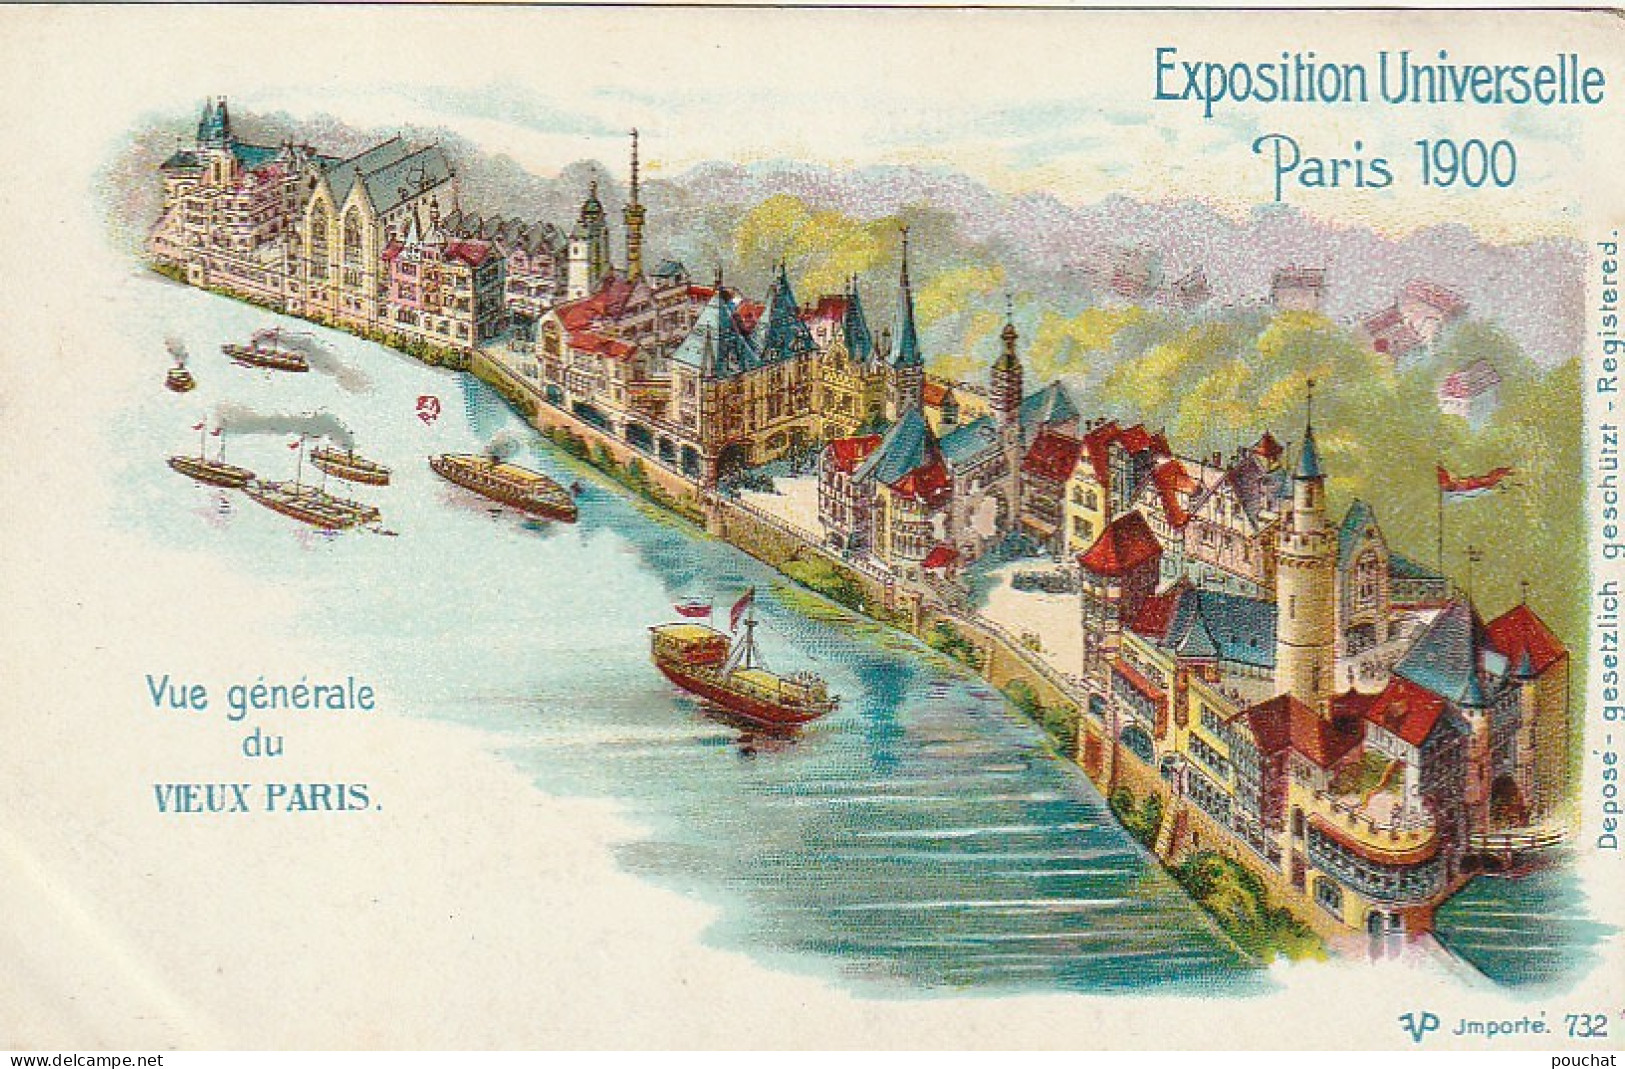 UR 5-(75) VUE GENERALE DU VIEUX PARIS - EXPOSITION UNIVERSELLE PARIS 1900 -  LITHOGRAPHIE - 2 SCANS - Exposiciones